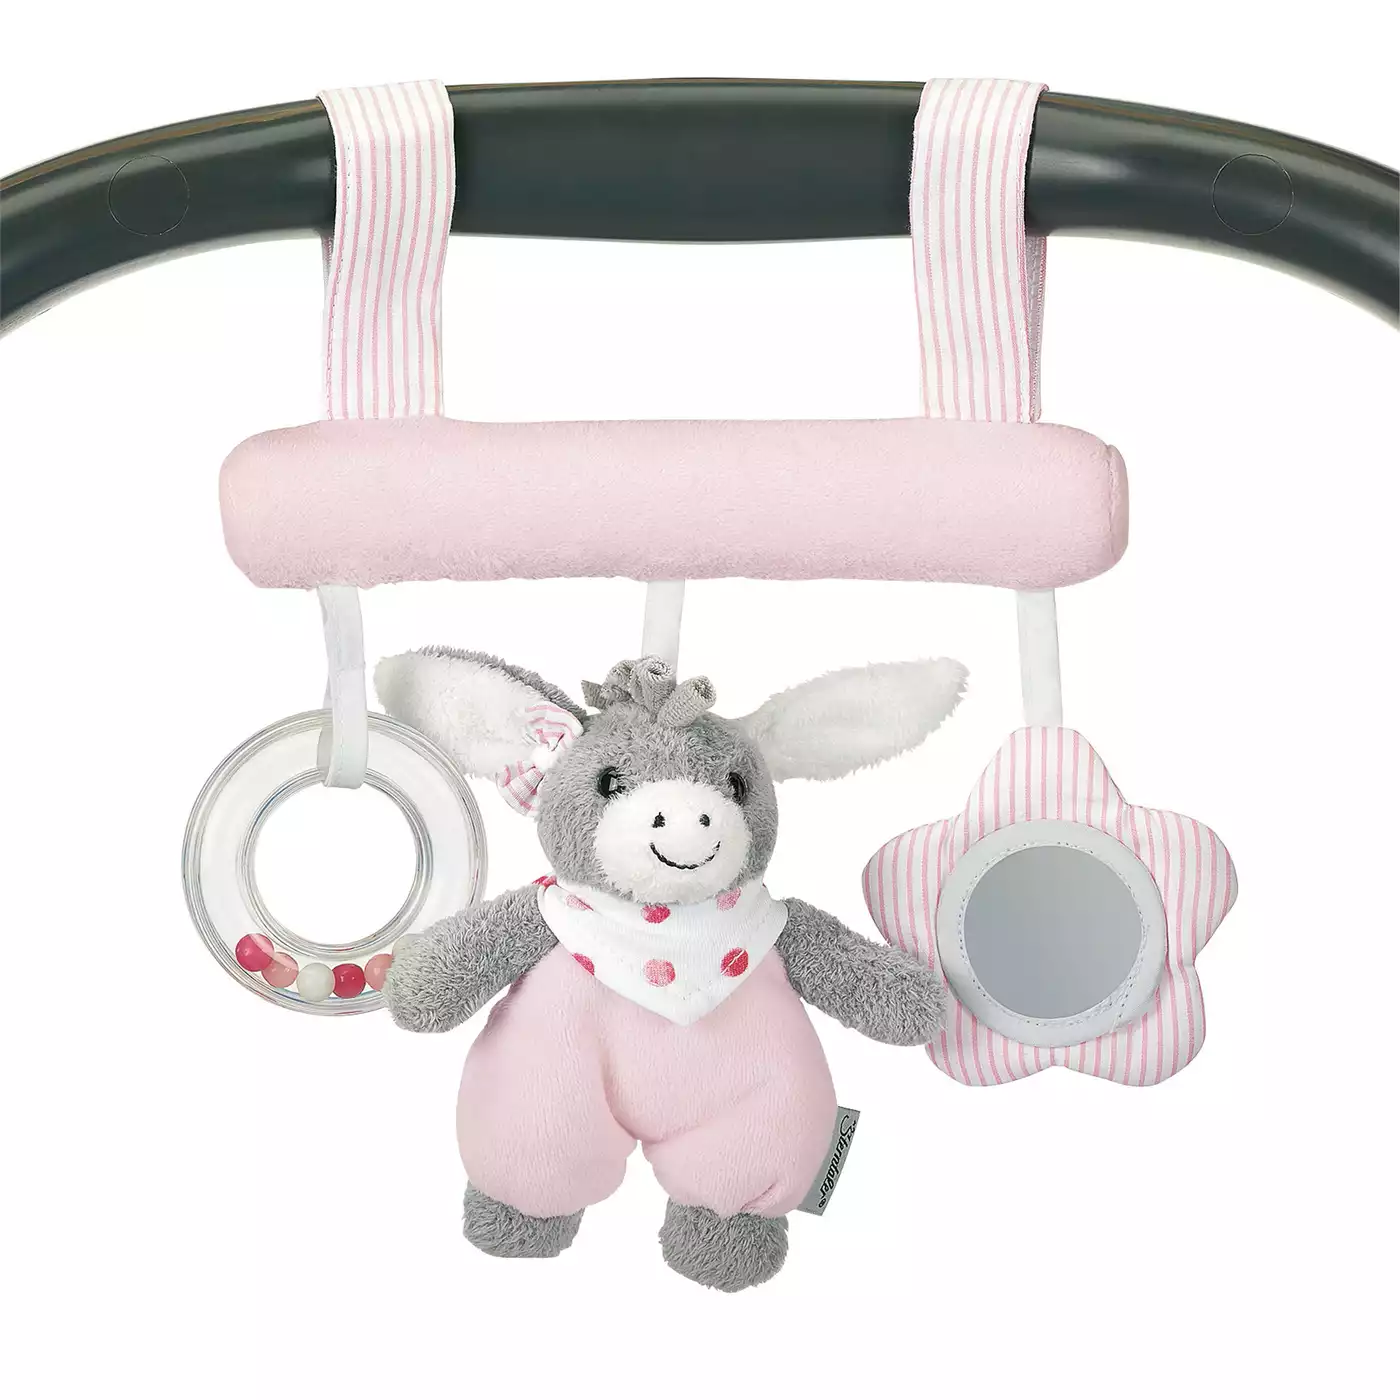 Spielzeug zum Aufhängen Emmi Girl Sterntaler Pink Rosa Weiß 2000570637215 3